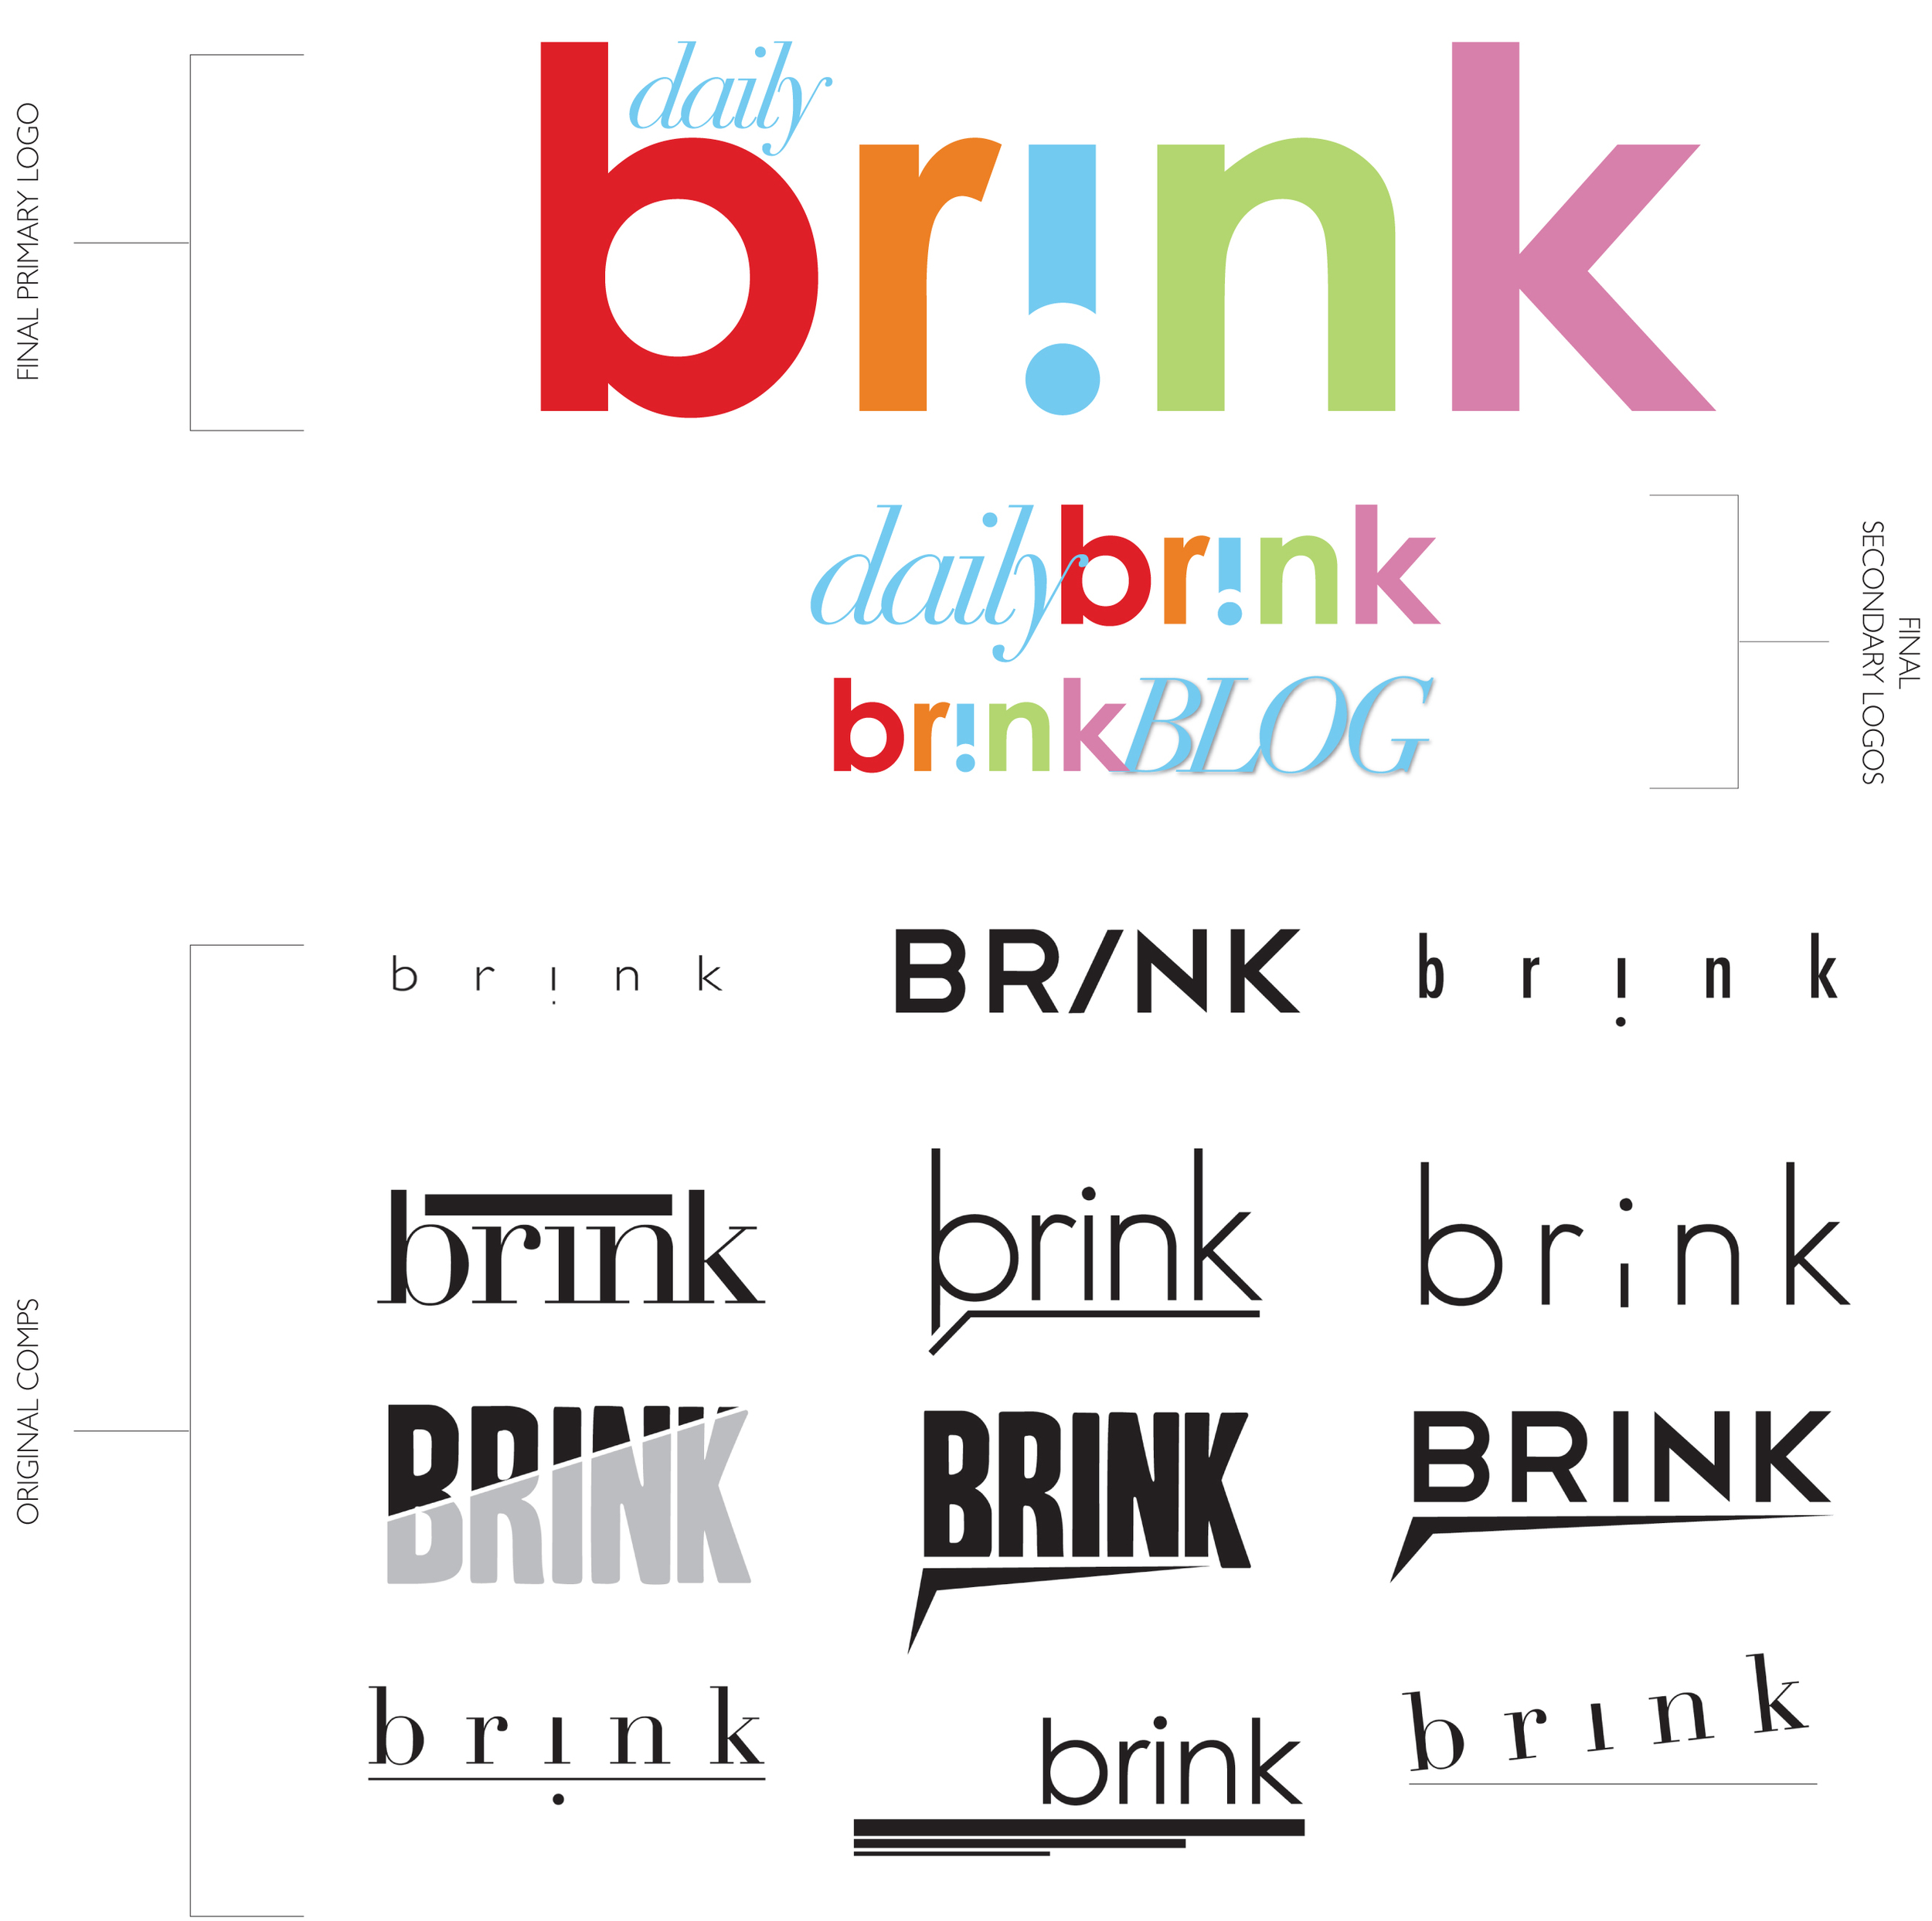  Site Logo and Branding&nbsp;  2010  DailyBrink.com 